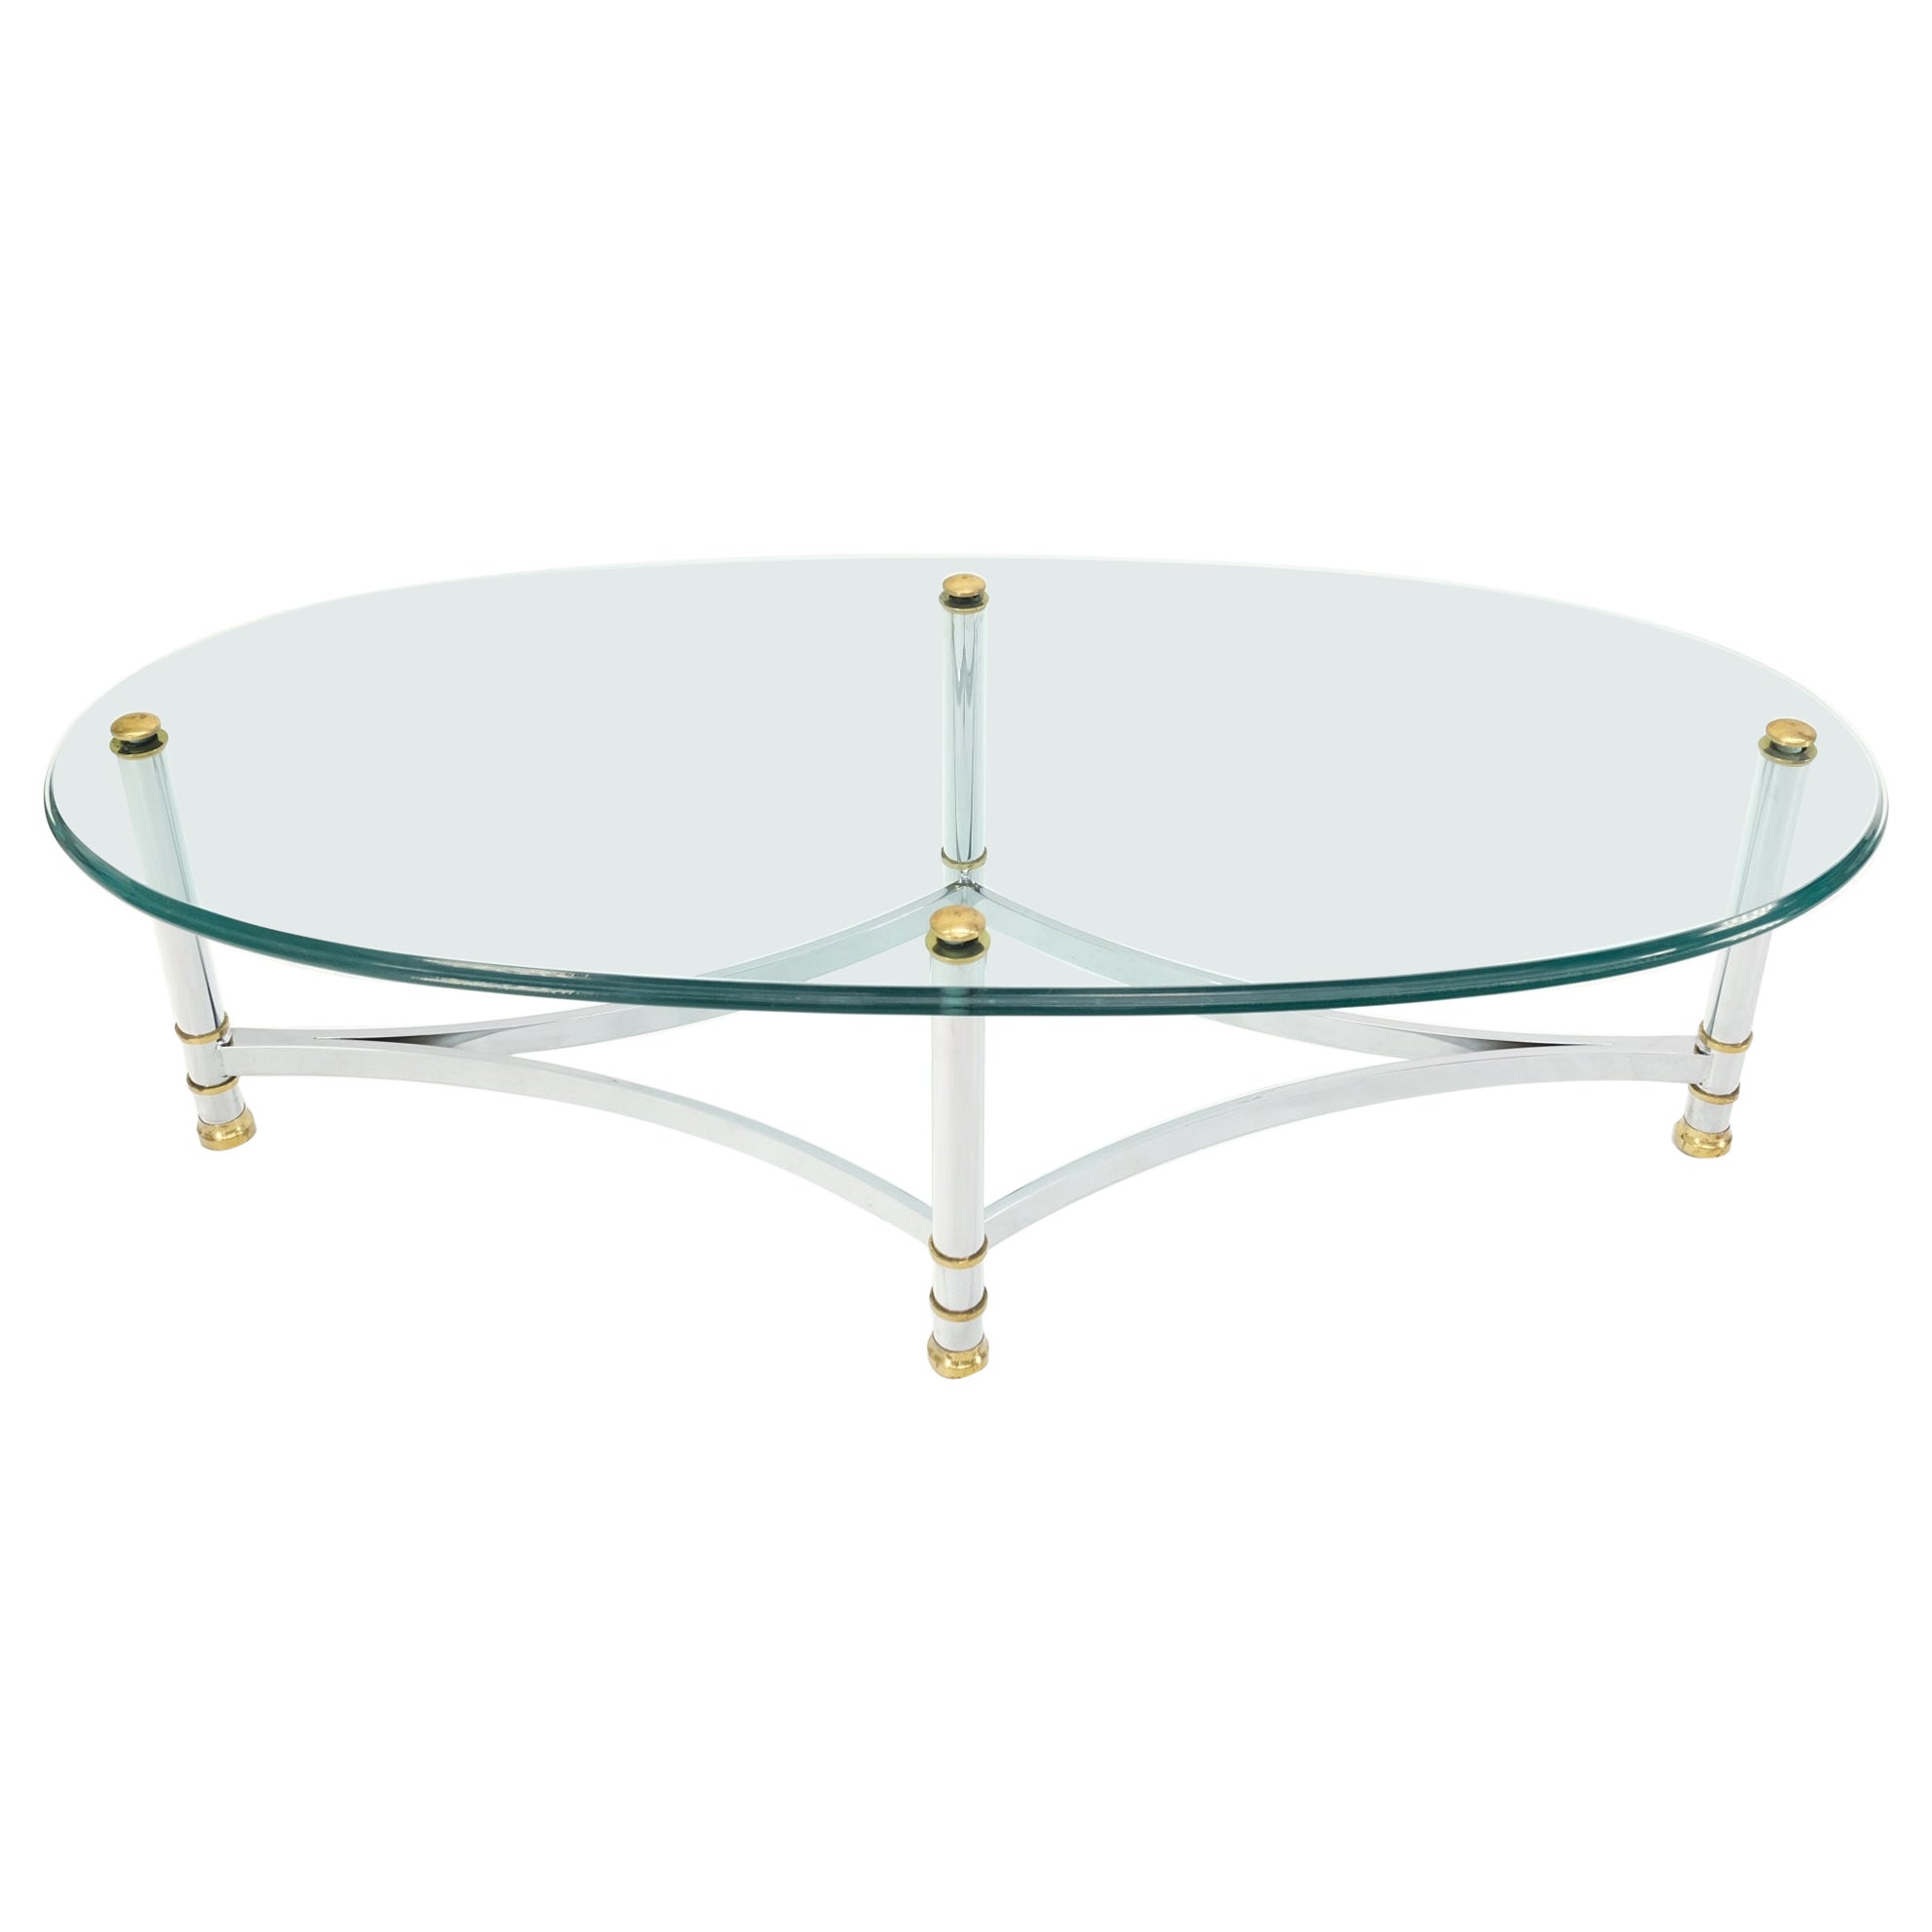 Table basse ovale en laiton chromé avec plateau en verre épais 3/4" Mid Century Modern Coffee Center Table